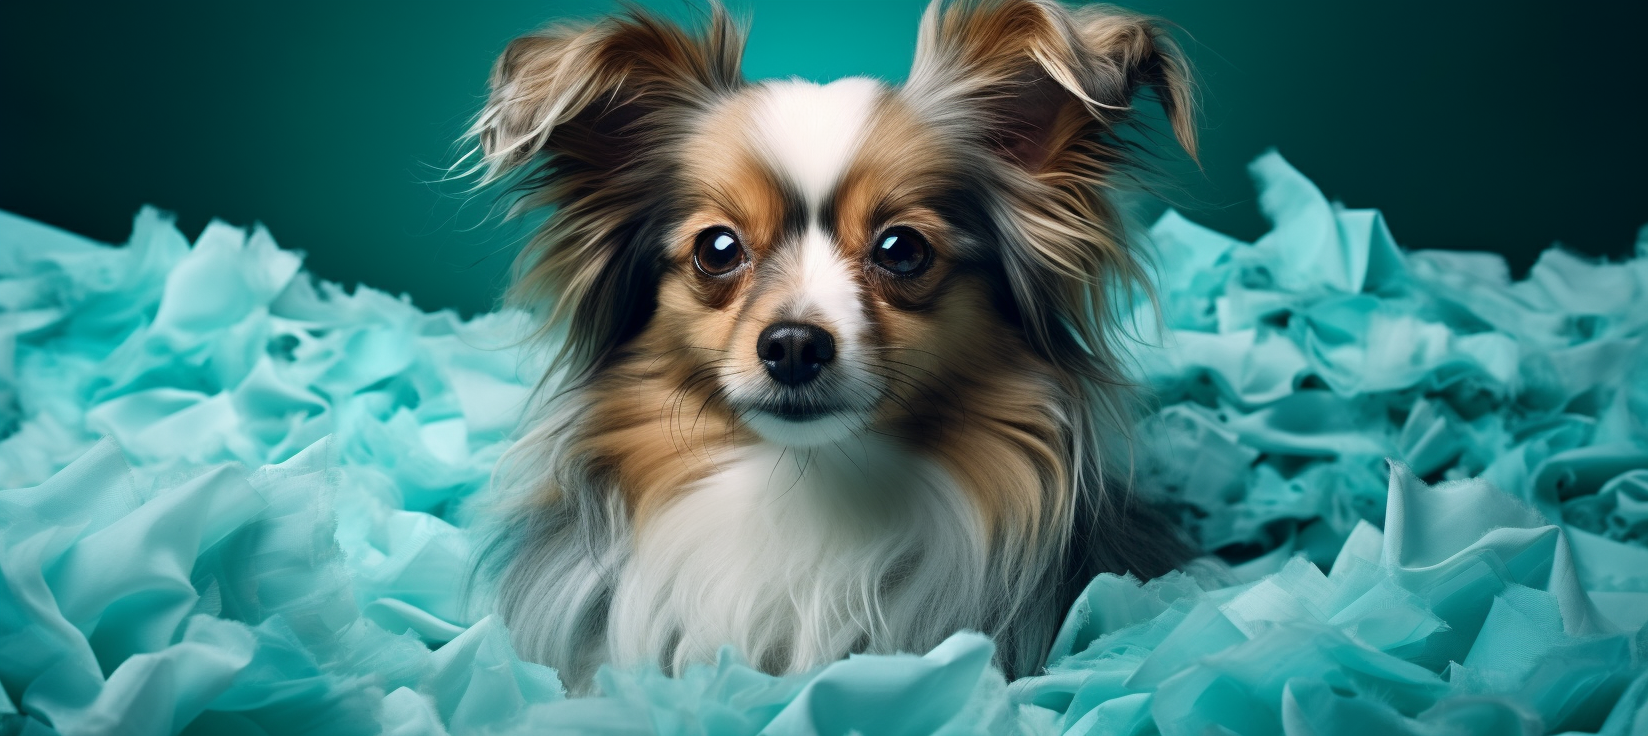 une photographie d'un chien avec un foulard turquoise qui peint une toile d'artiste avec un pinceau et une palette de couleur, fond turquoise.